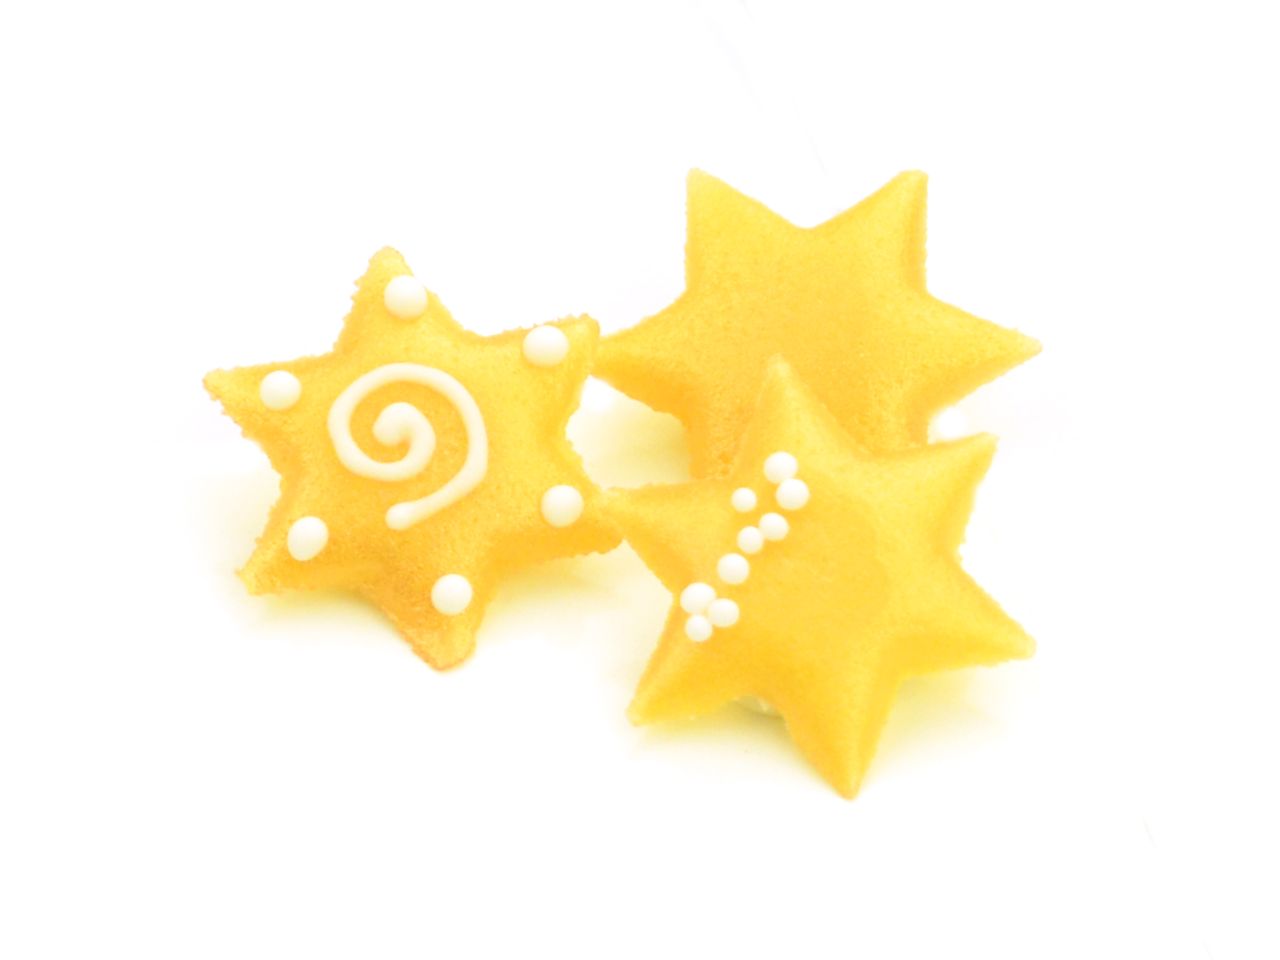 Marzipan-Dekor: Sterne, 3 Designs, Gelb & Weiß, 10 Stück à 30 x 3 mm